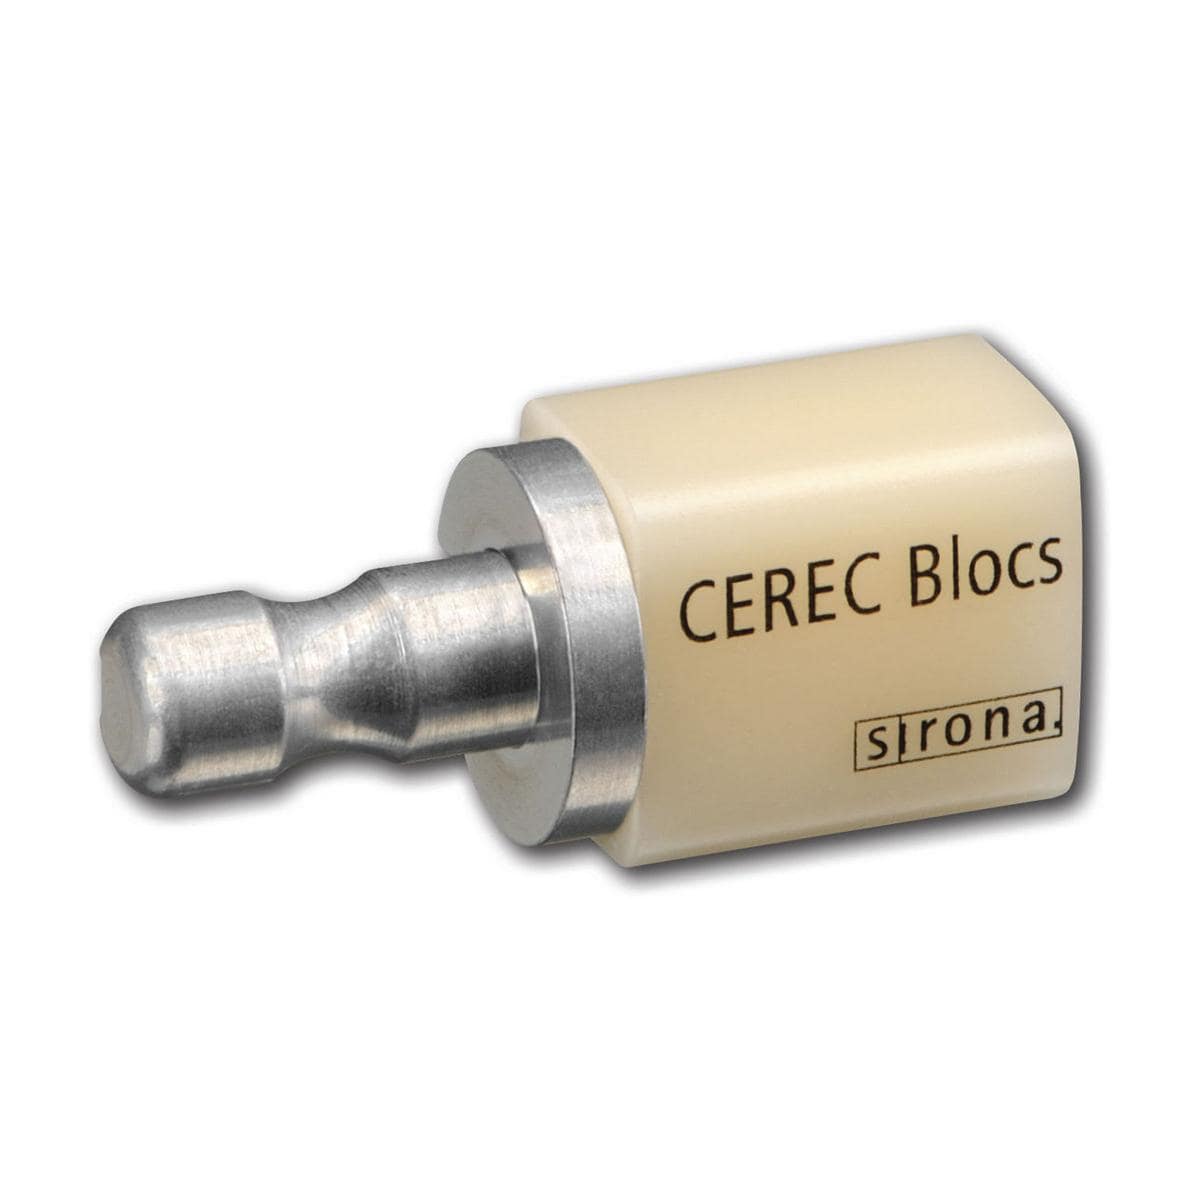 CEREC Blocs C 14 - A3C, Packung 8 Stück